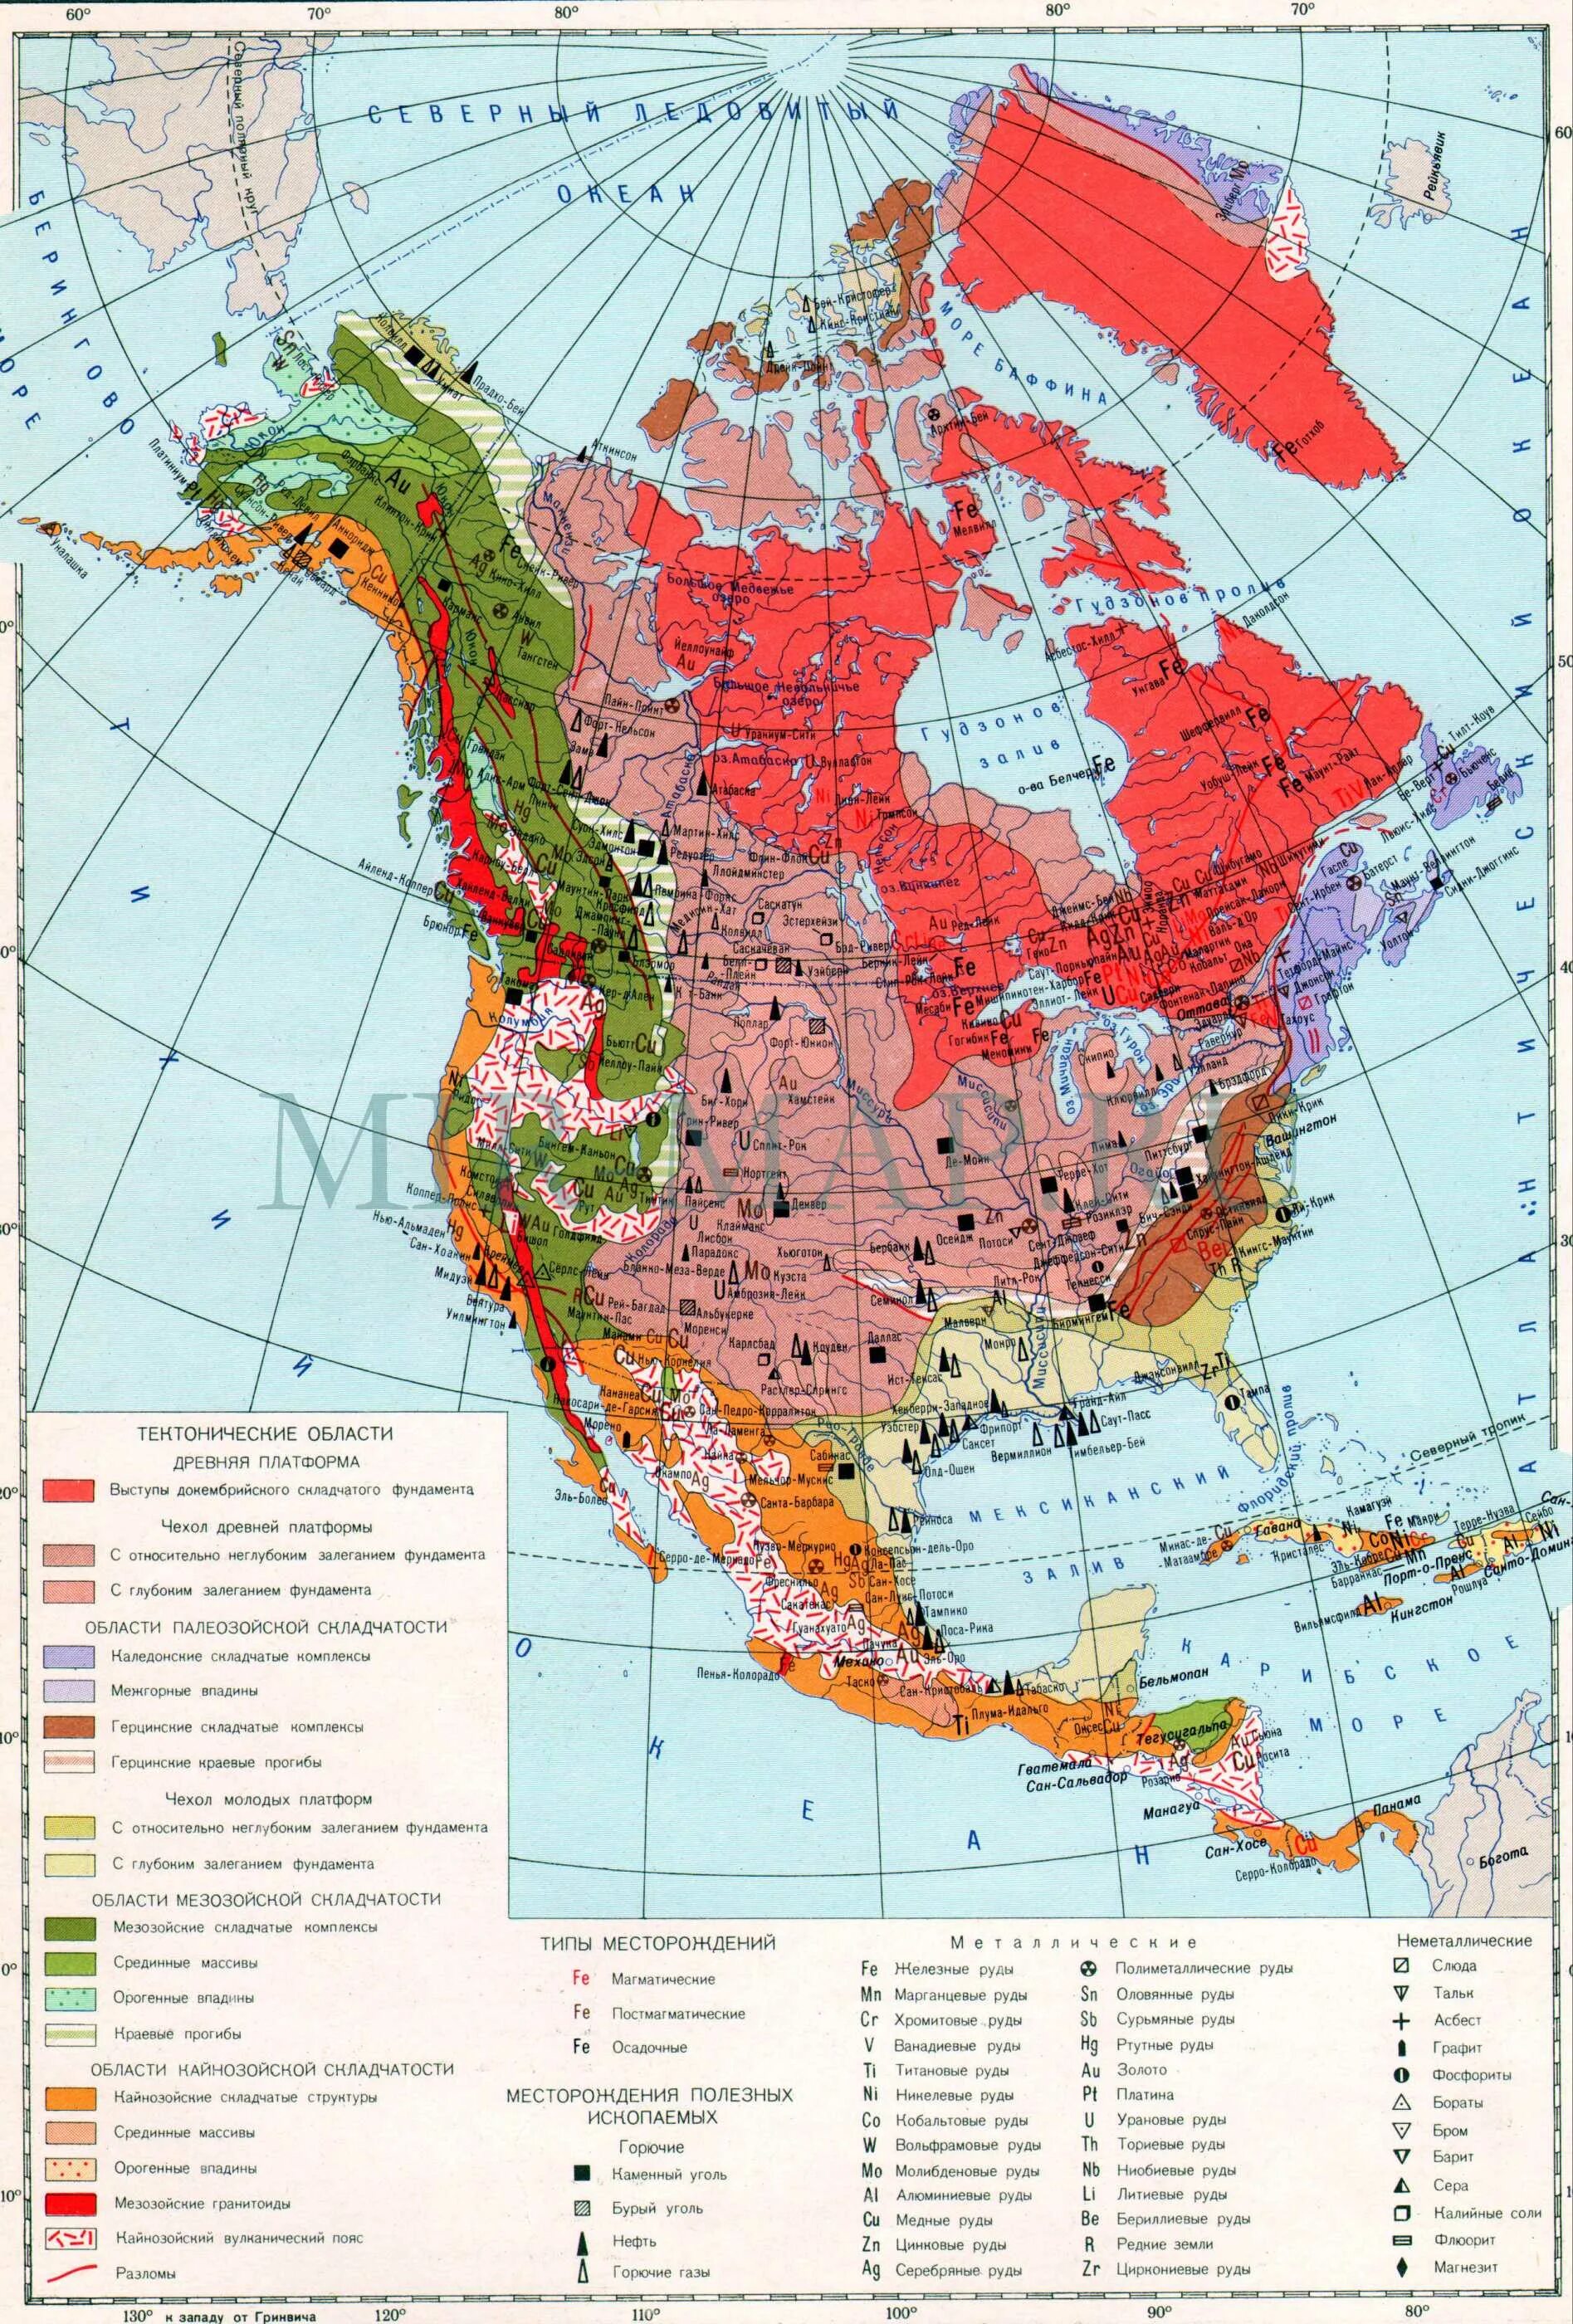 Полезные ископаемые материка северная америка. Полезные ископаемые Северной Америки на контурной карте. Месторождения полезных ископаемых Северной Америки. Карта Северной Америки месторождения полезных ископаемых. Минеральные ресурсы Северной Америки на карте.